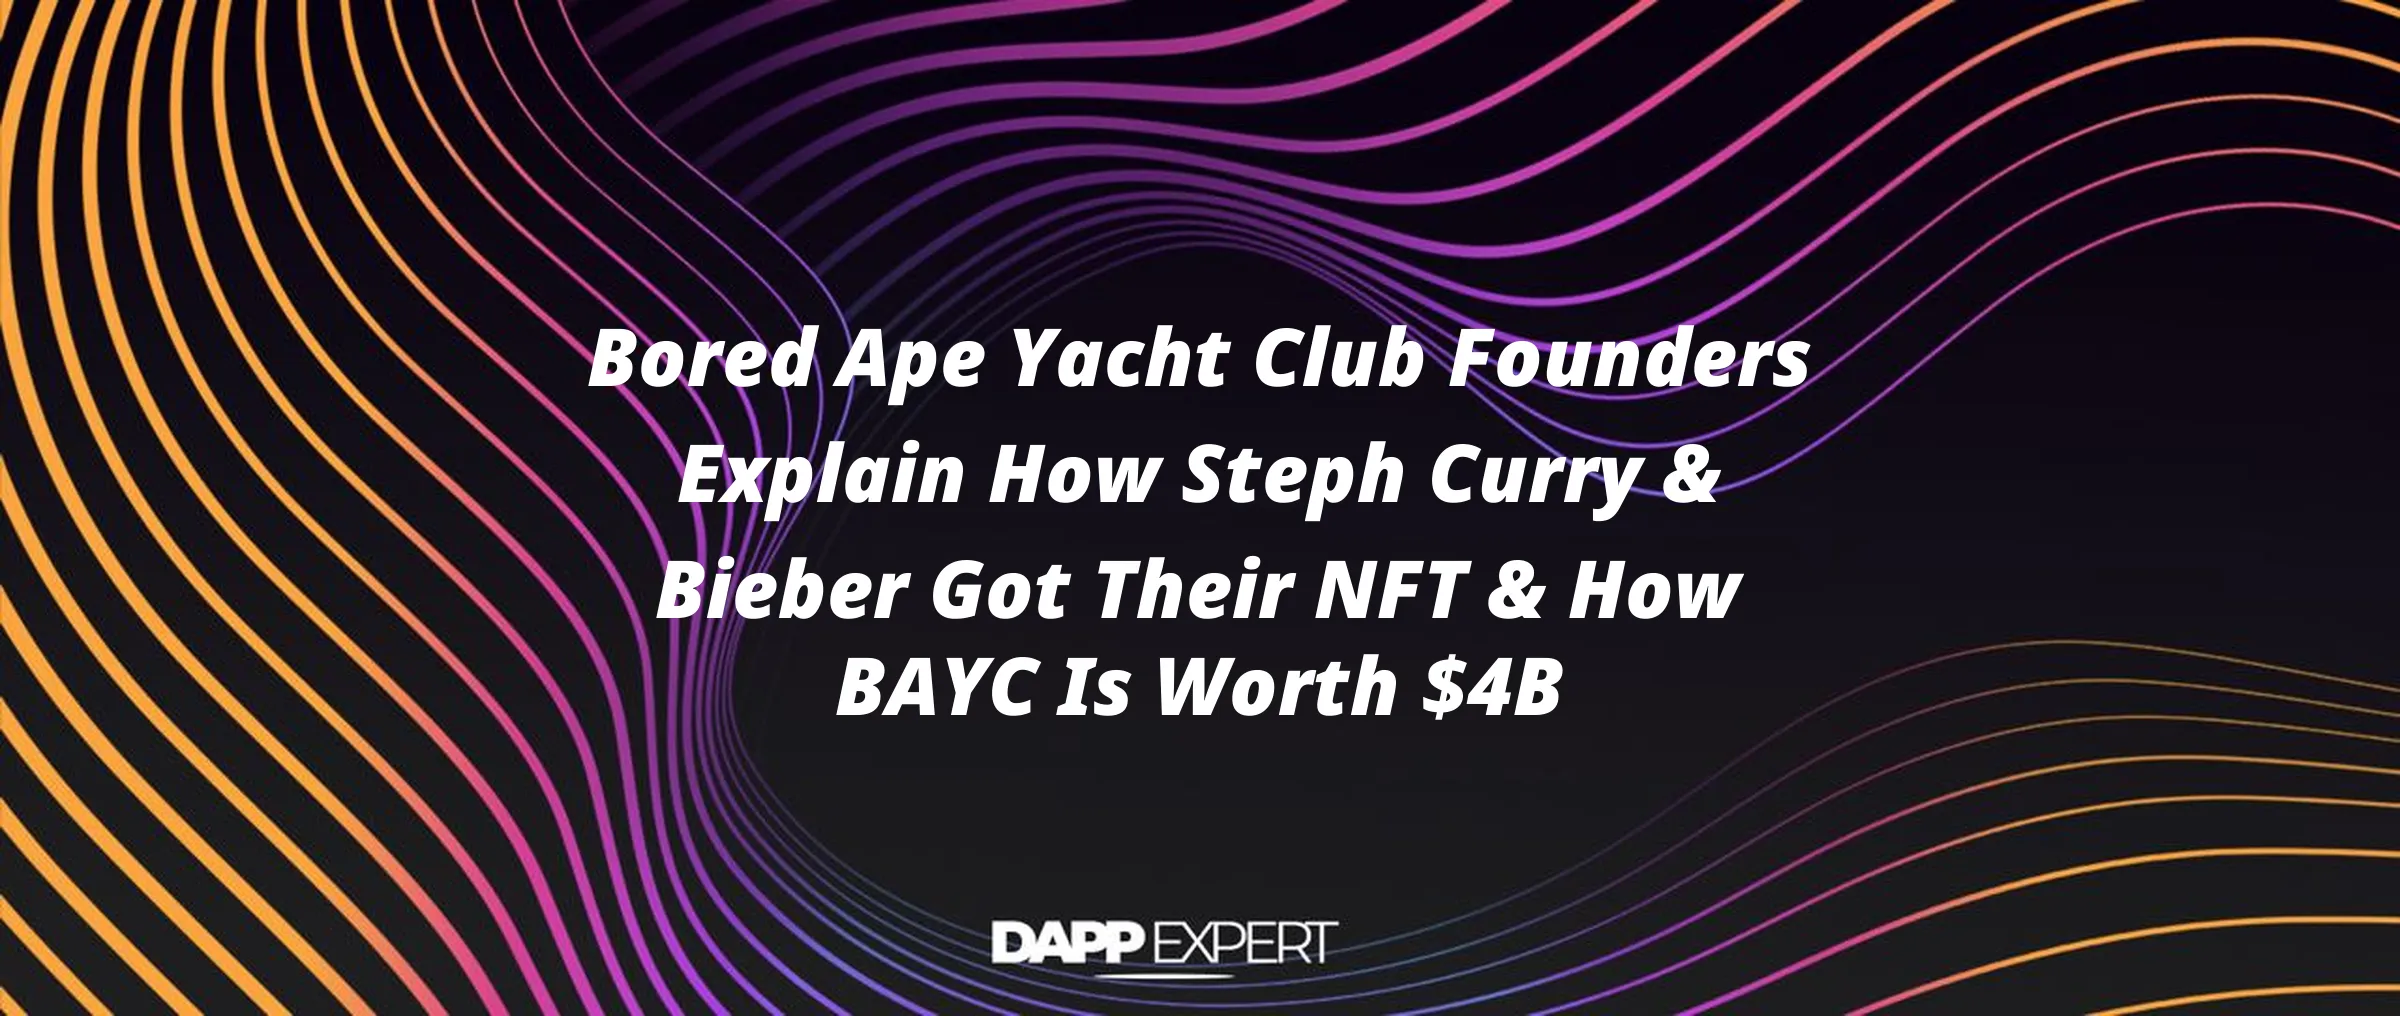 Bored Ape Yacht Club Founders Explain How Steph Curry & Bieber Got Their NFT & How BAYC Is Worth $4B